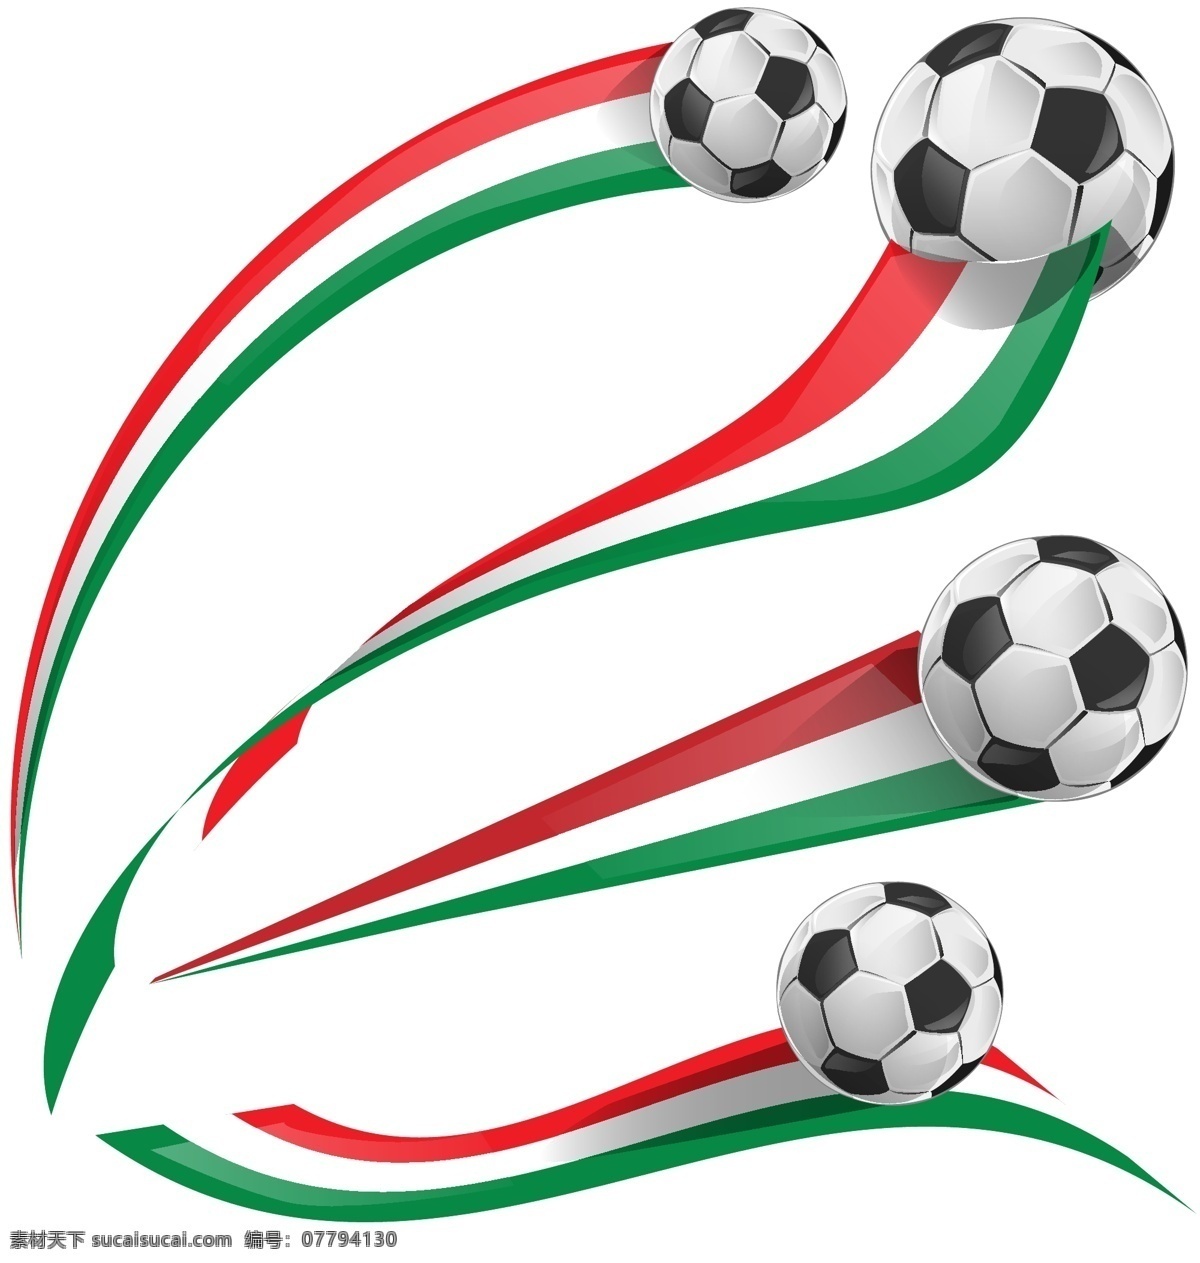 2014 巴西 世界杯 绿色 足球比赛 足球背景 巴西世界杯 足球素材 足球运动 奥运会 手绘 矢量 体育运动 文化艺术